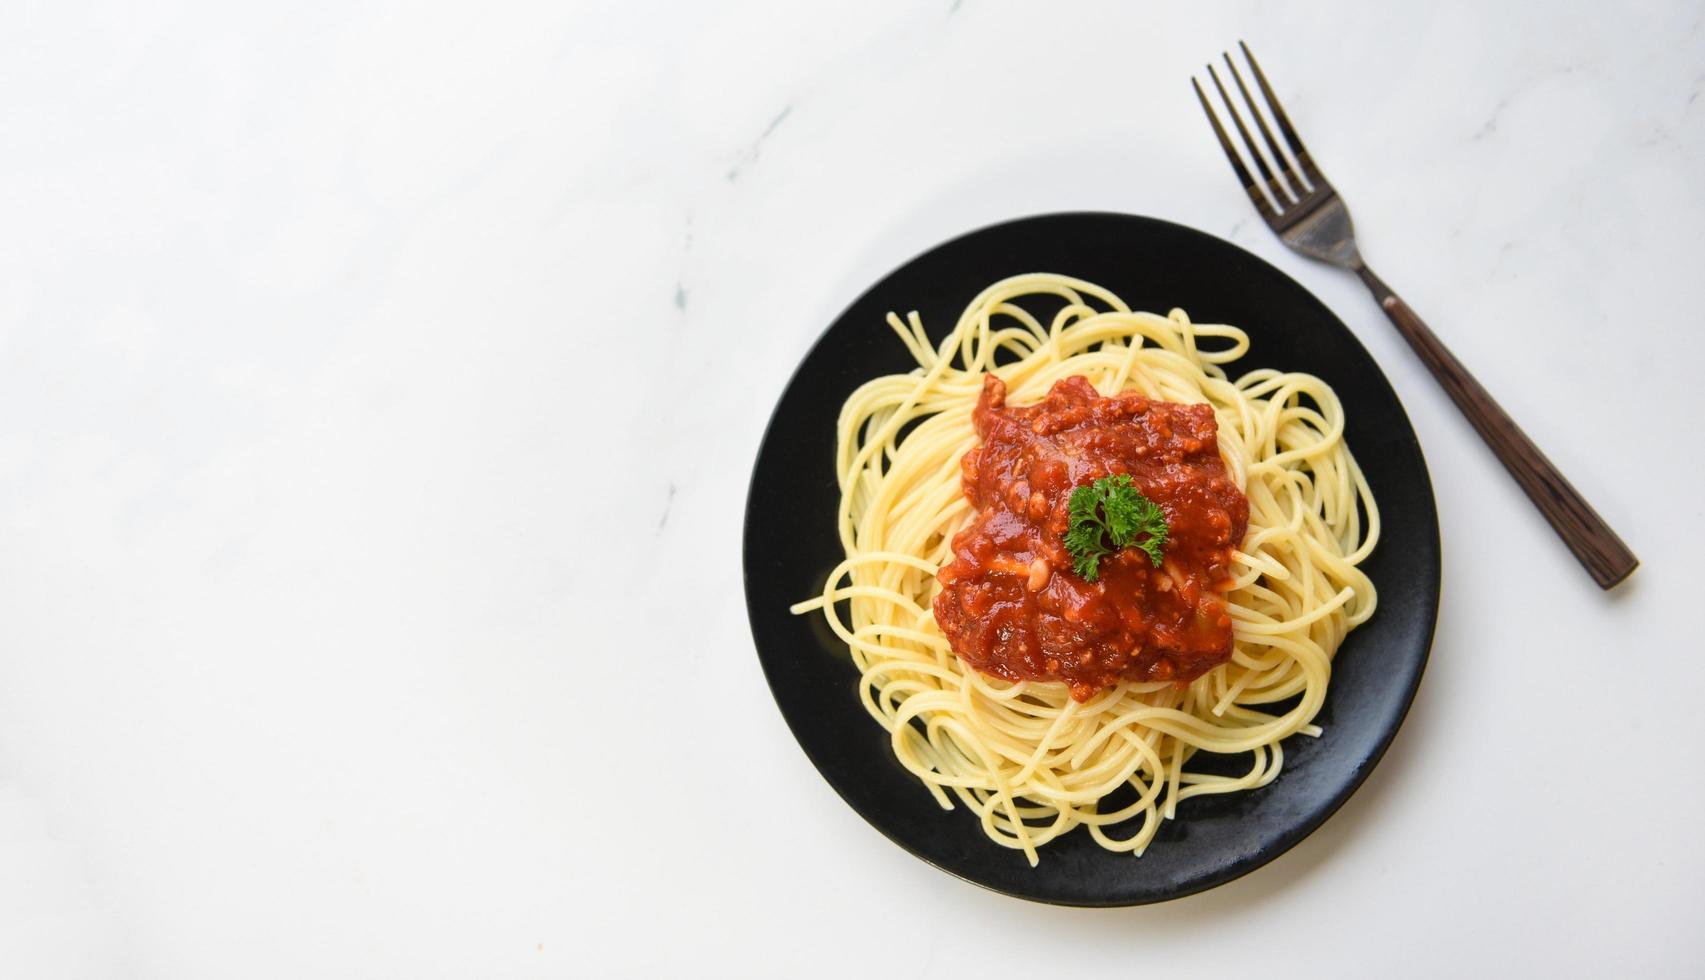 spaghetti bolognaise, vue de dessus - pâtes italiennes spaghetti servies sur une assiette noire avec sauce tomate et persil au restaurant cuisine italienne et concept de menu photo